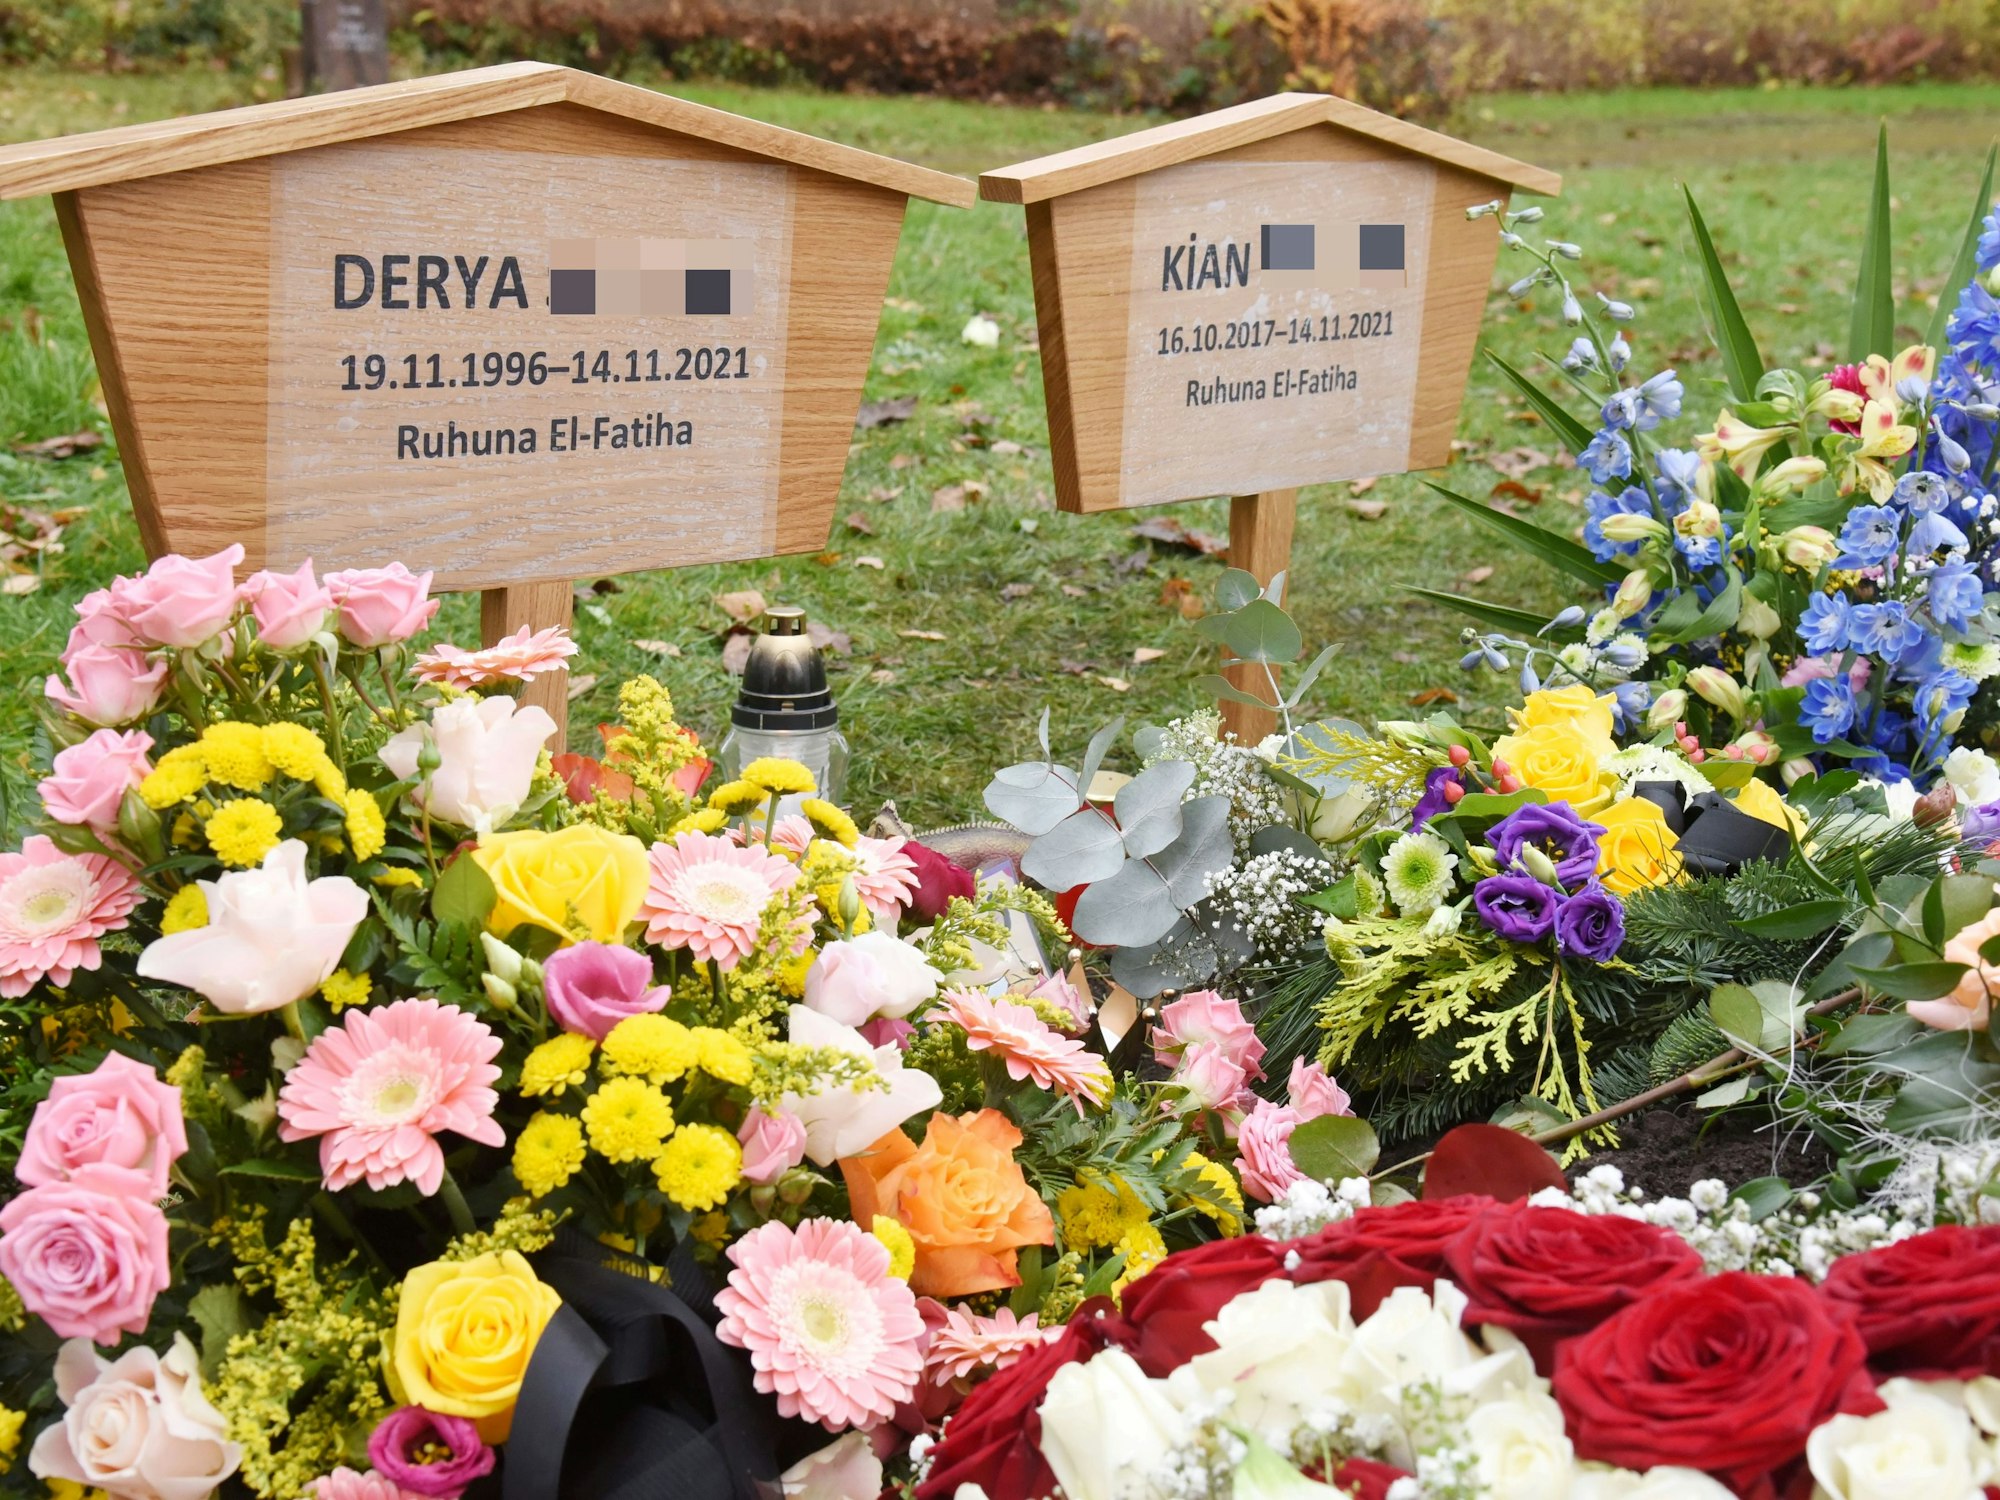 Das Grab von Derya und Kian ist mit Blumen bedeckt.